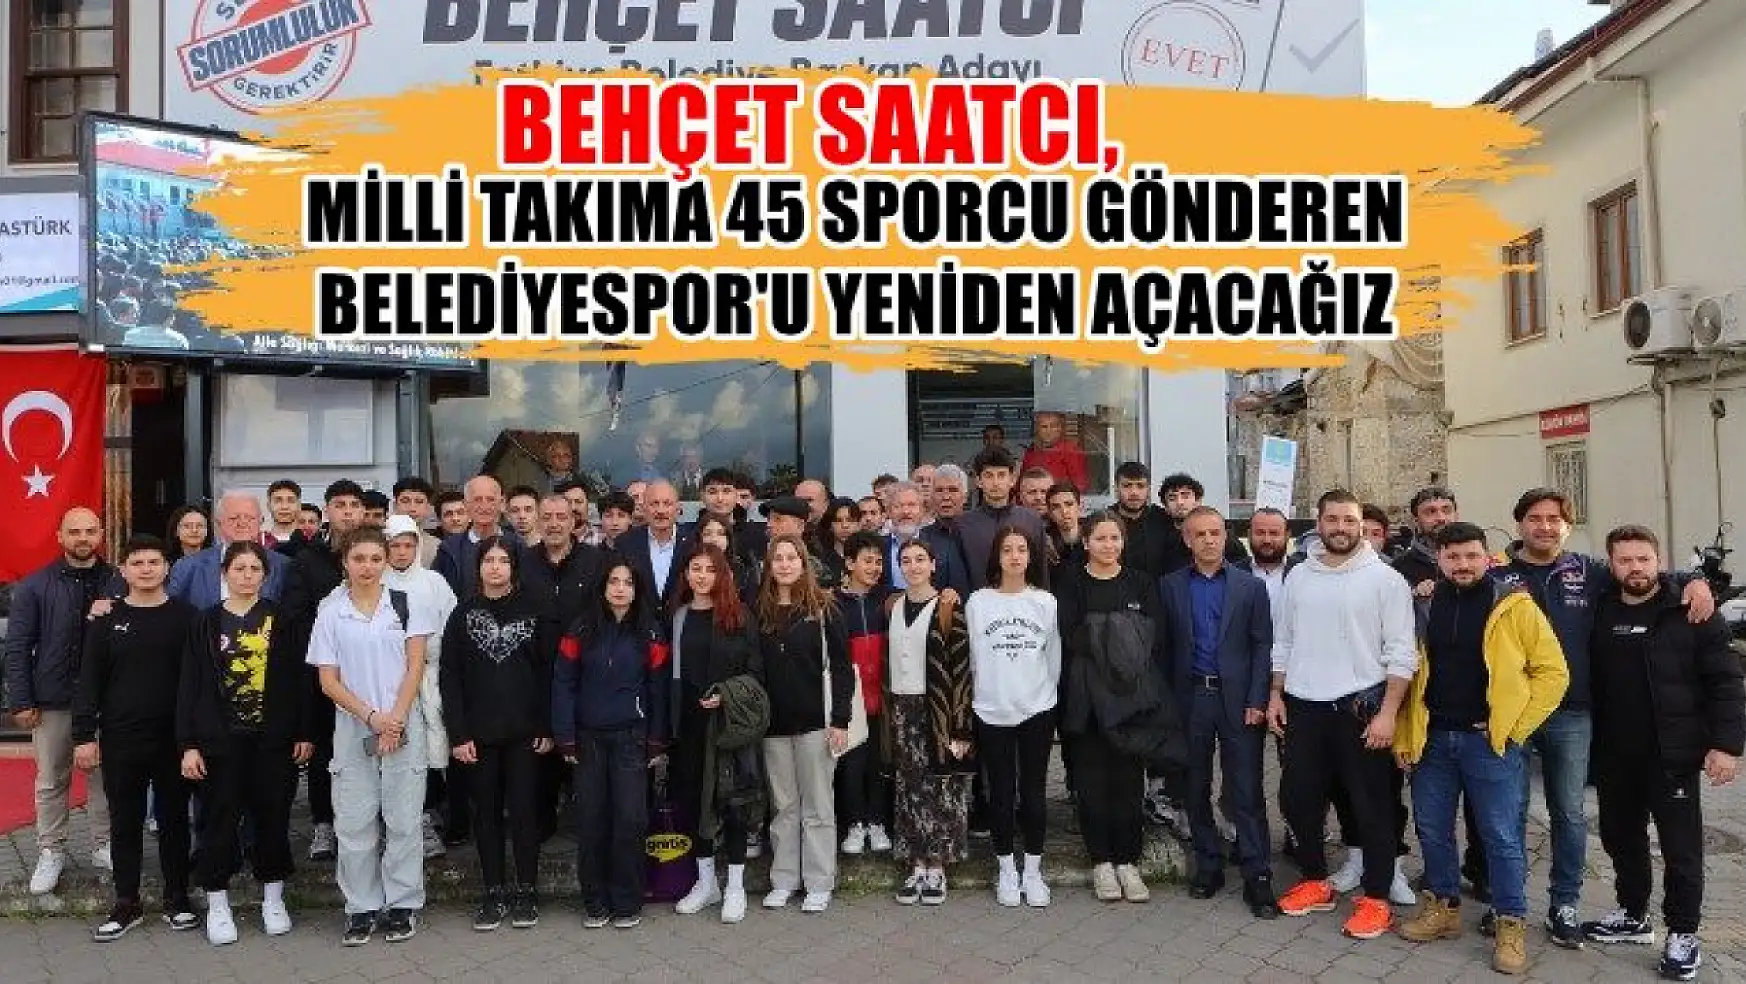 Behçet Saatcı, Milli Takıma 45 Sporcu Gönderen Belediyespor'u Yeniden Açacağız